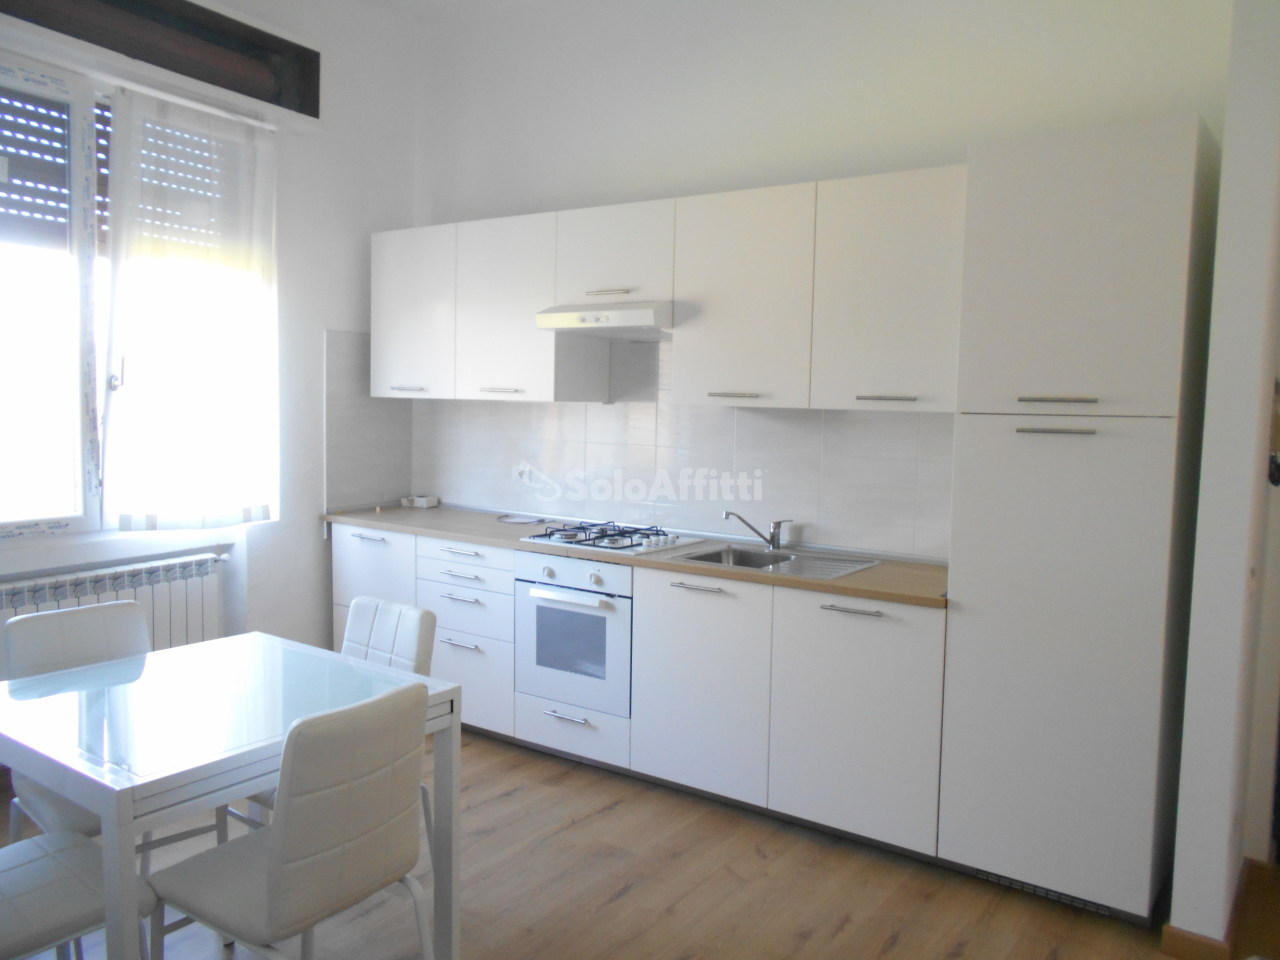 Appartamento in affitto a Cantù, 2 locali, prezzo € 550 | PortaleAgenzieImmobiliari.it